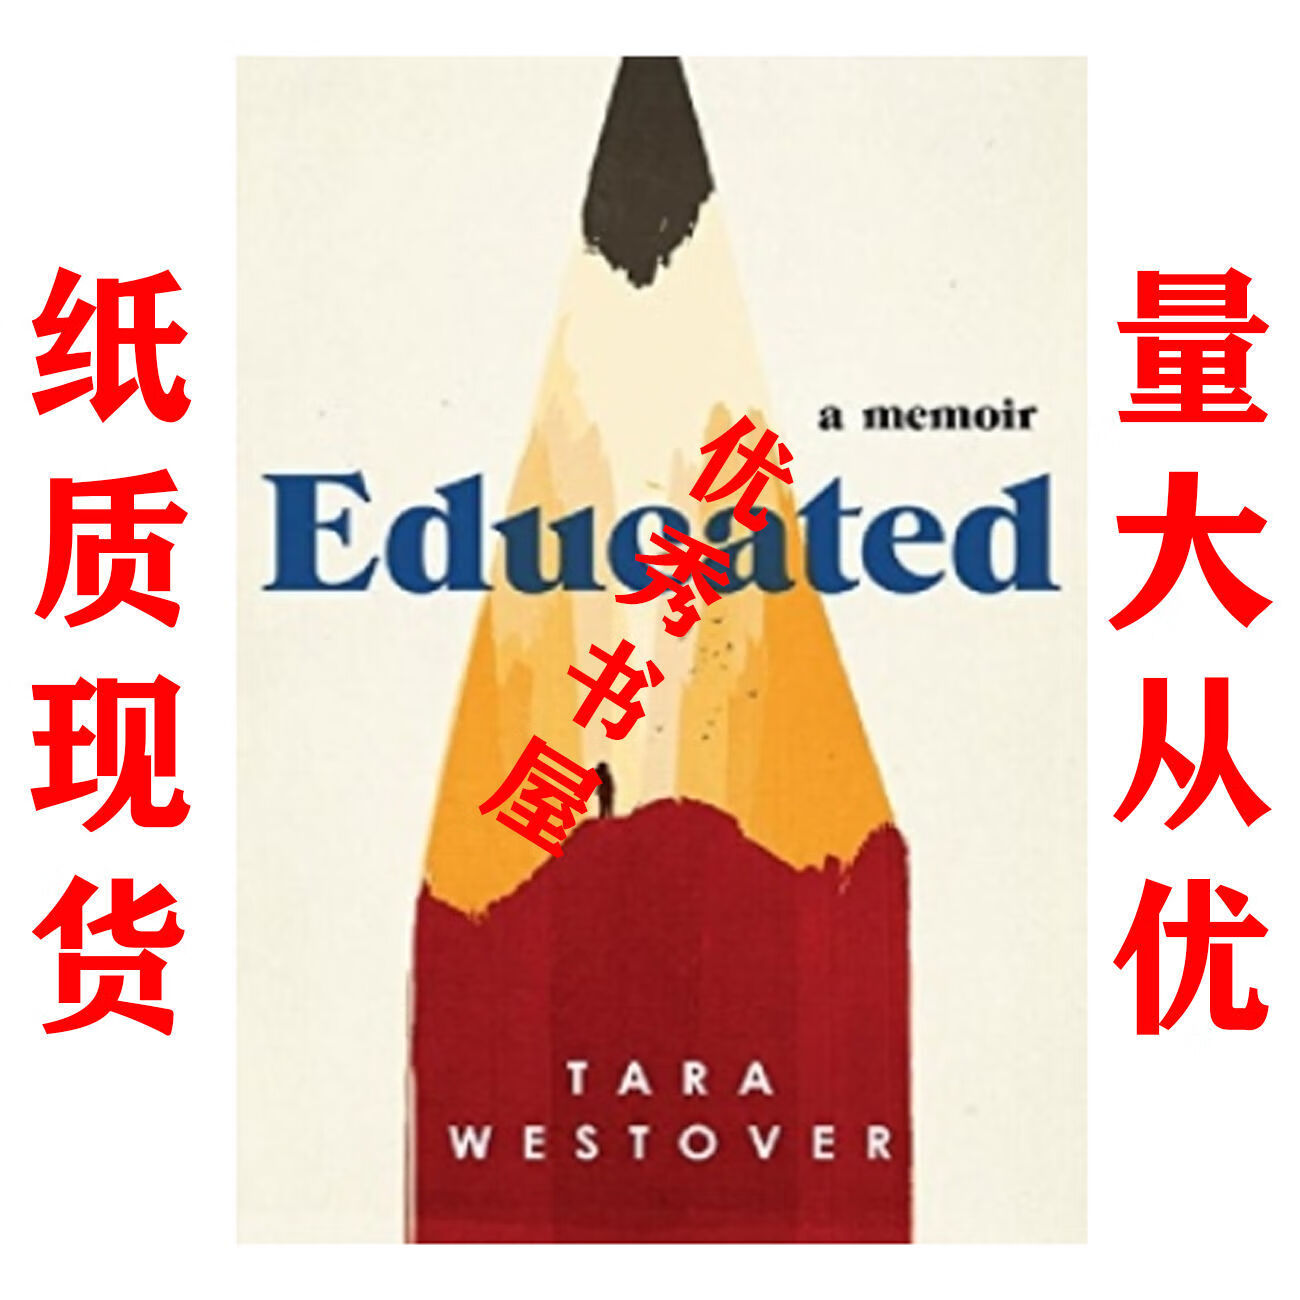 纸质现货Educated - Tara Westover txt格式下载